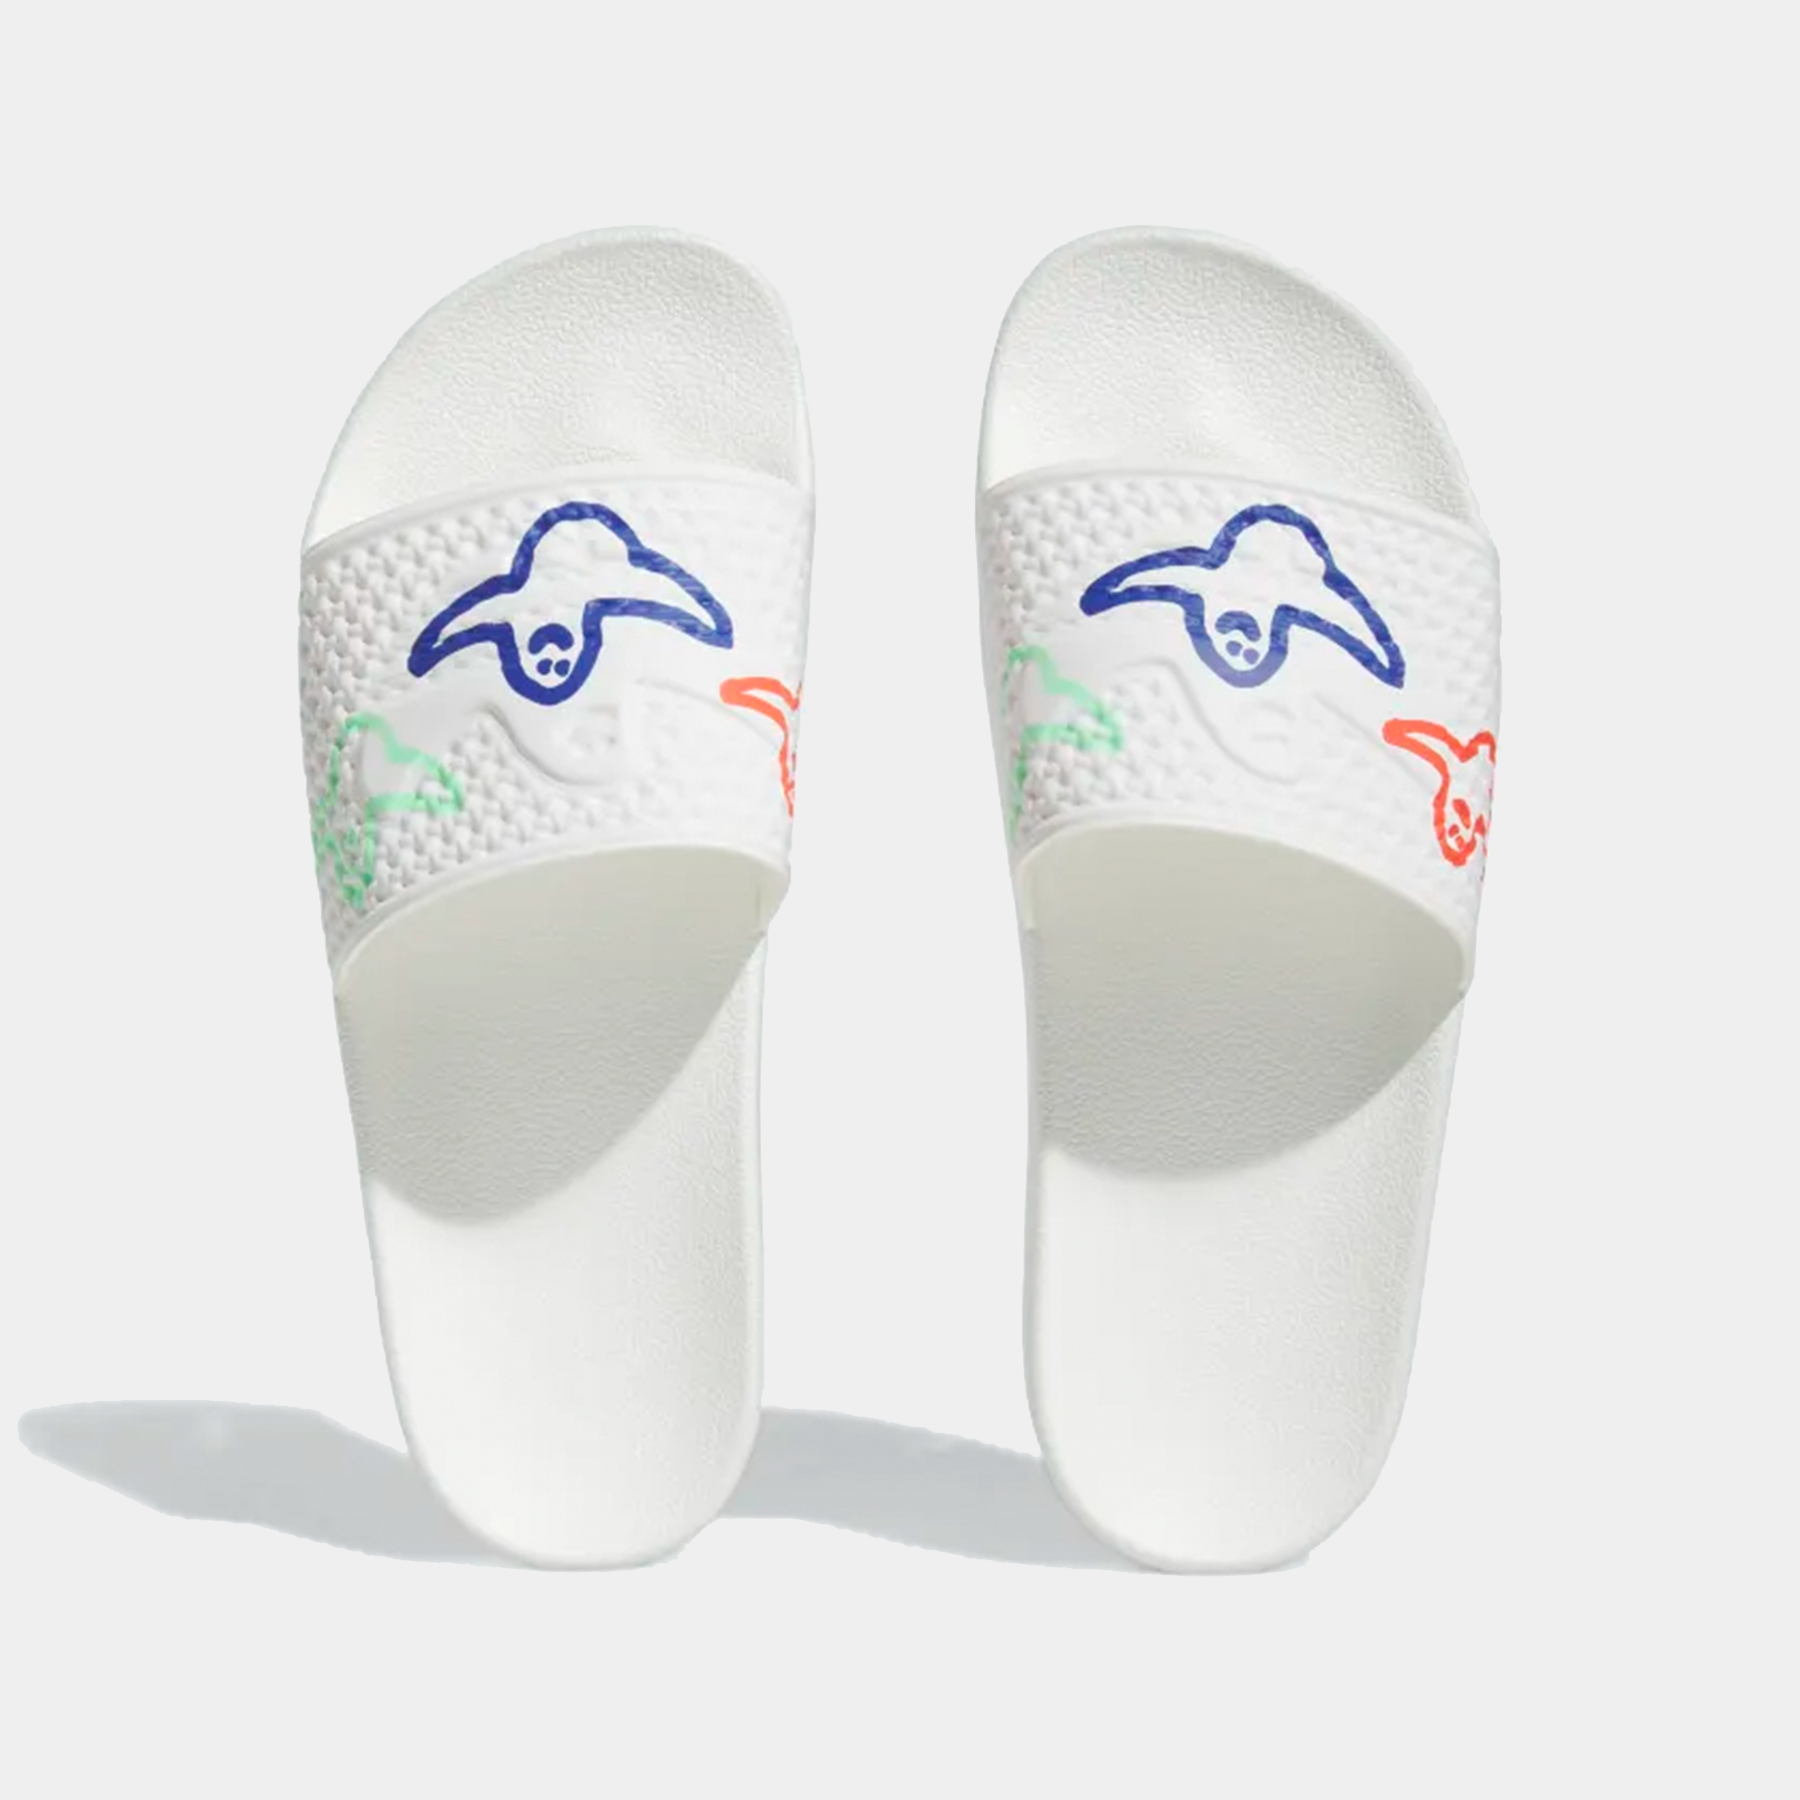 Adidas - Shmoofoil Slide - White